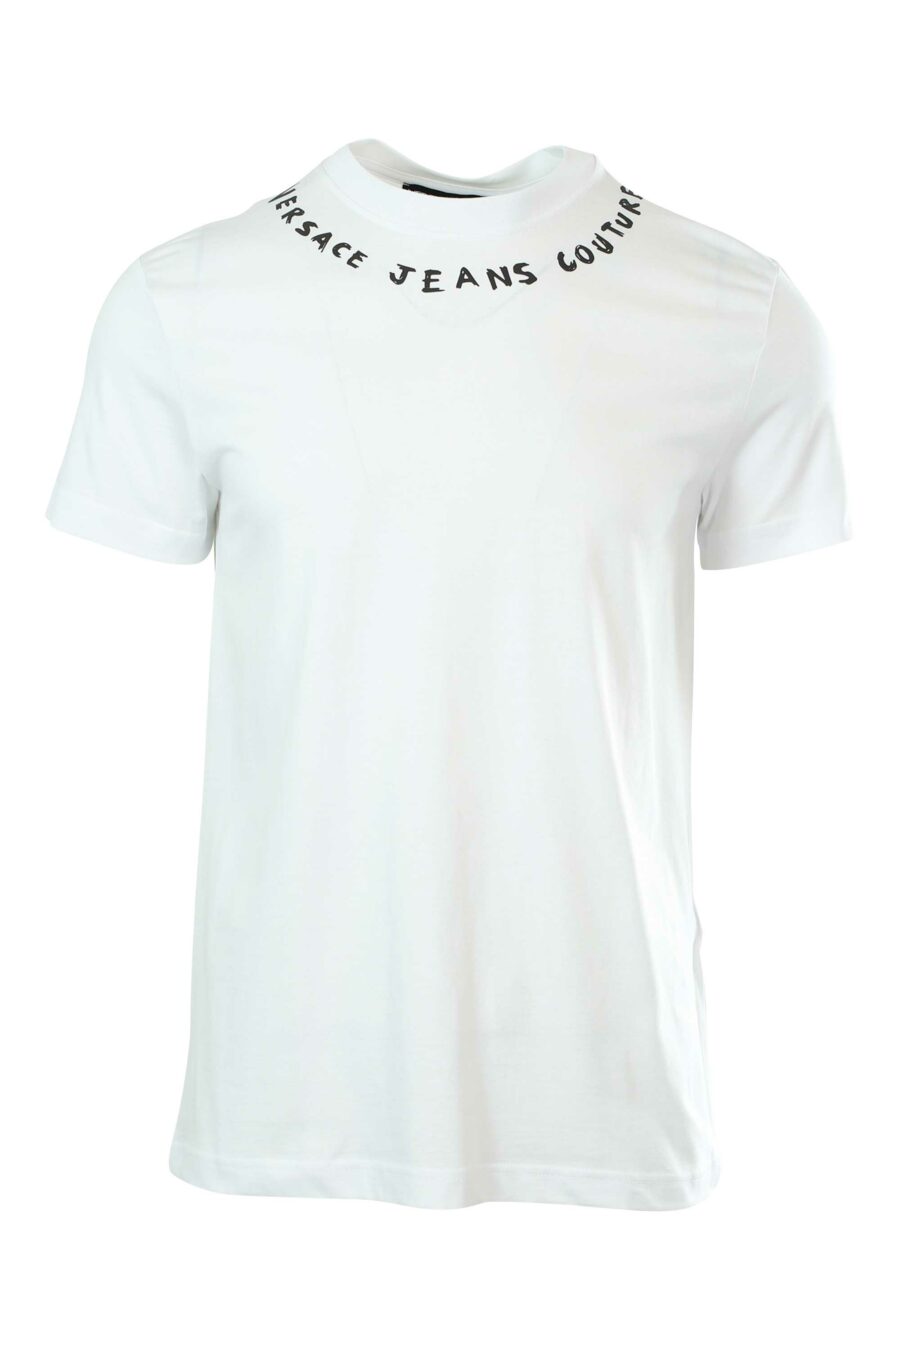 Camiseta blanca con logo en cuello - 8052019237092